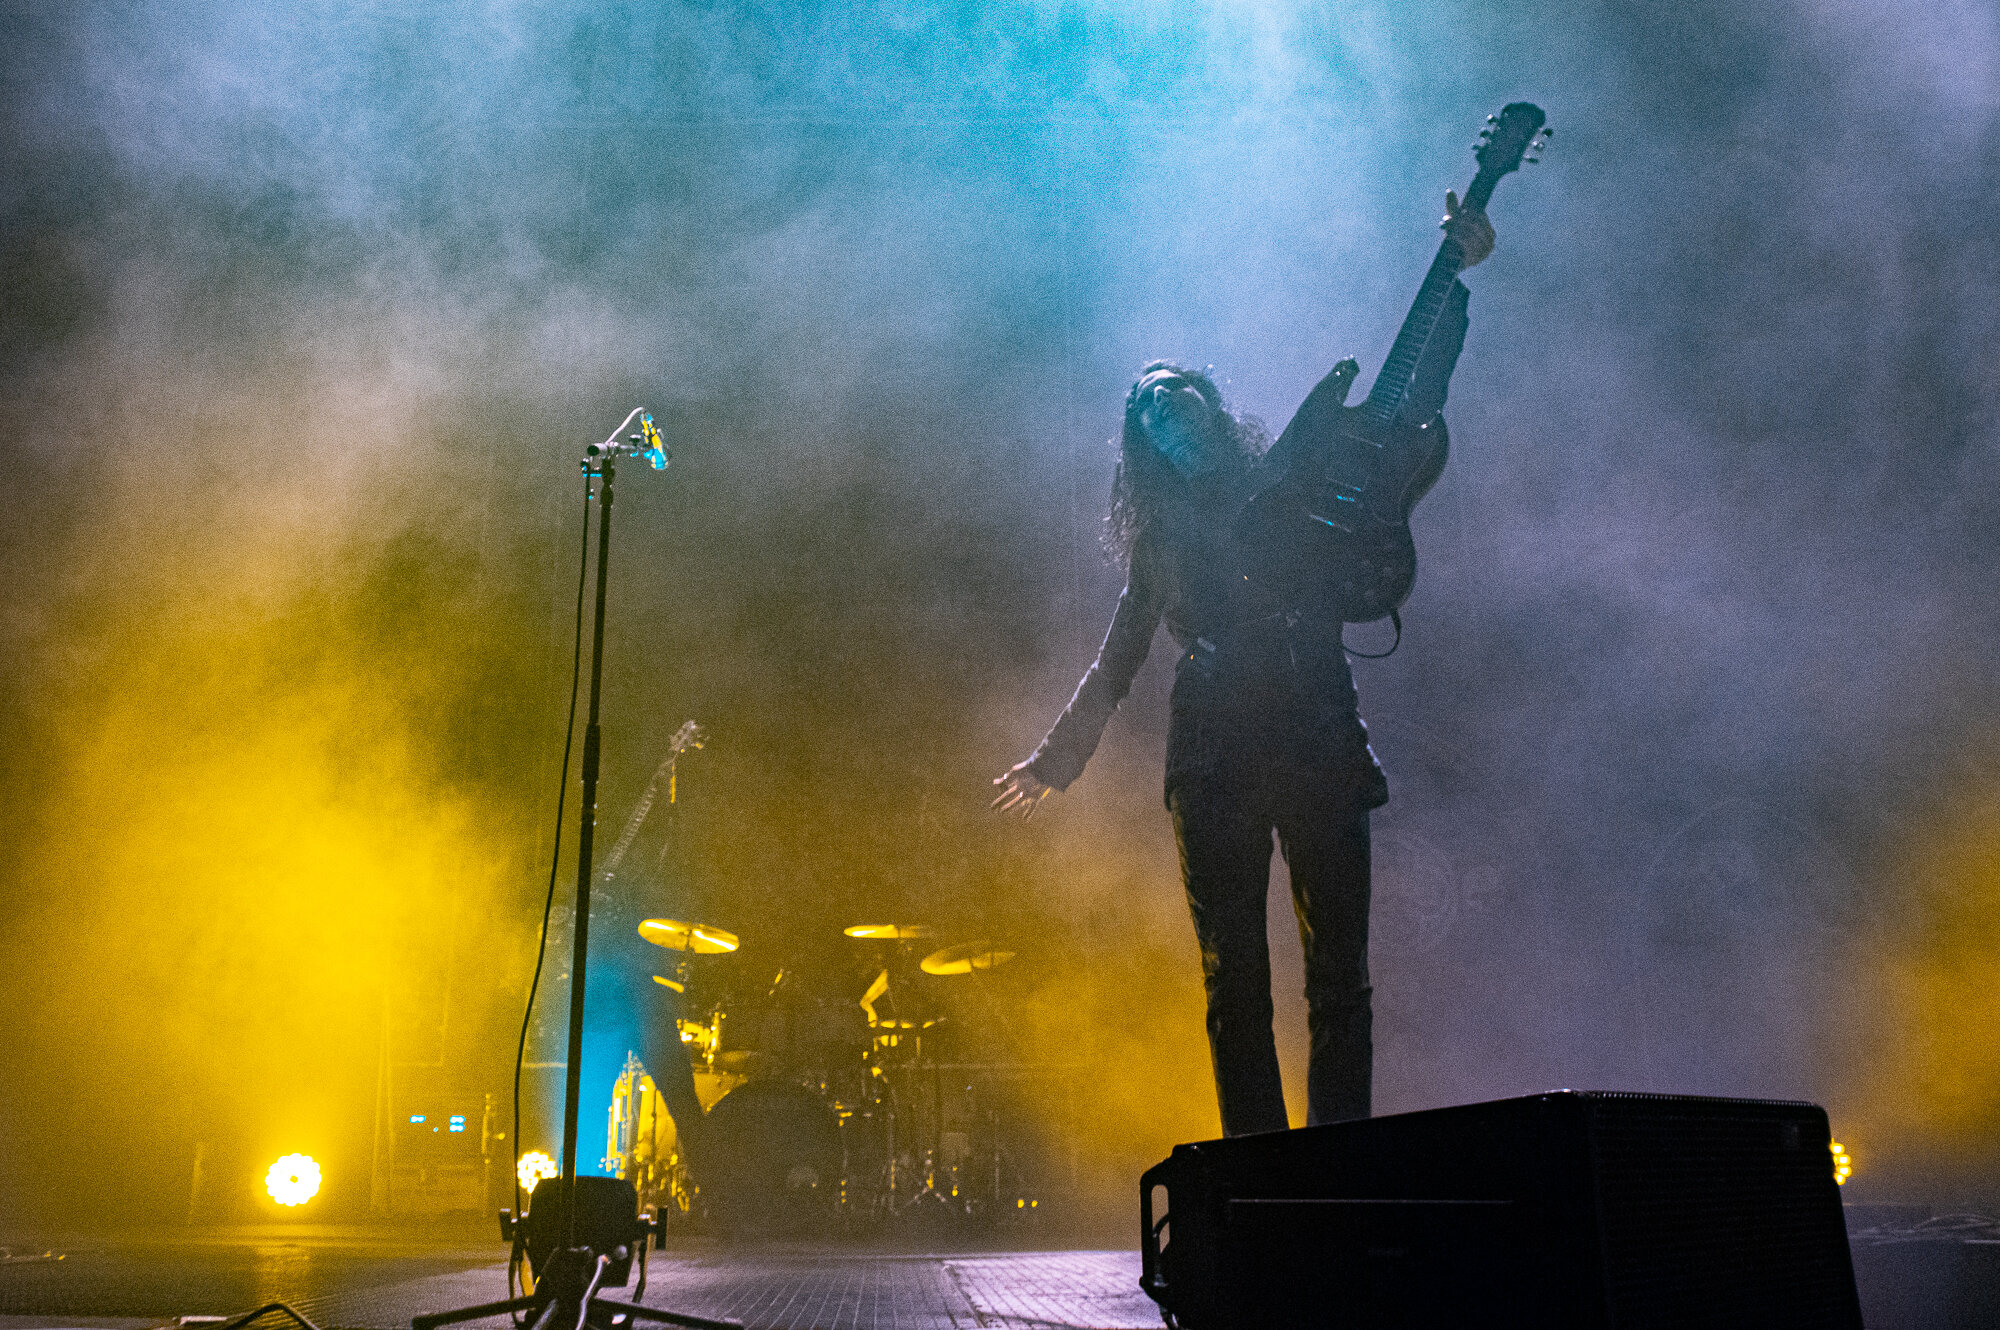 Tribulation Live in concert at The SSE Arena, Wembley, November 2019